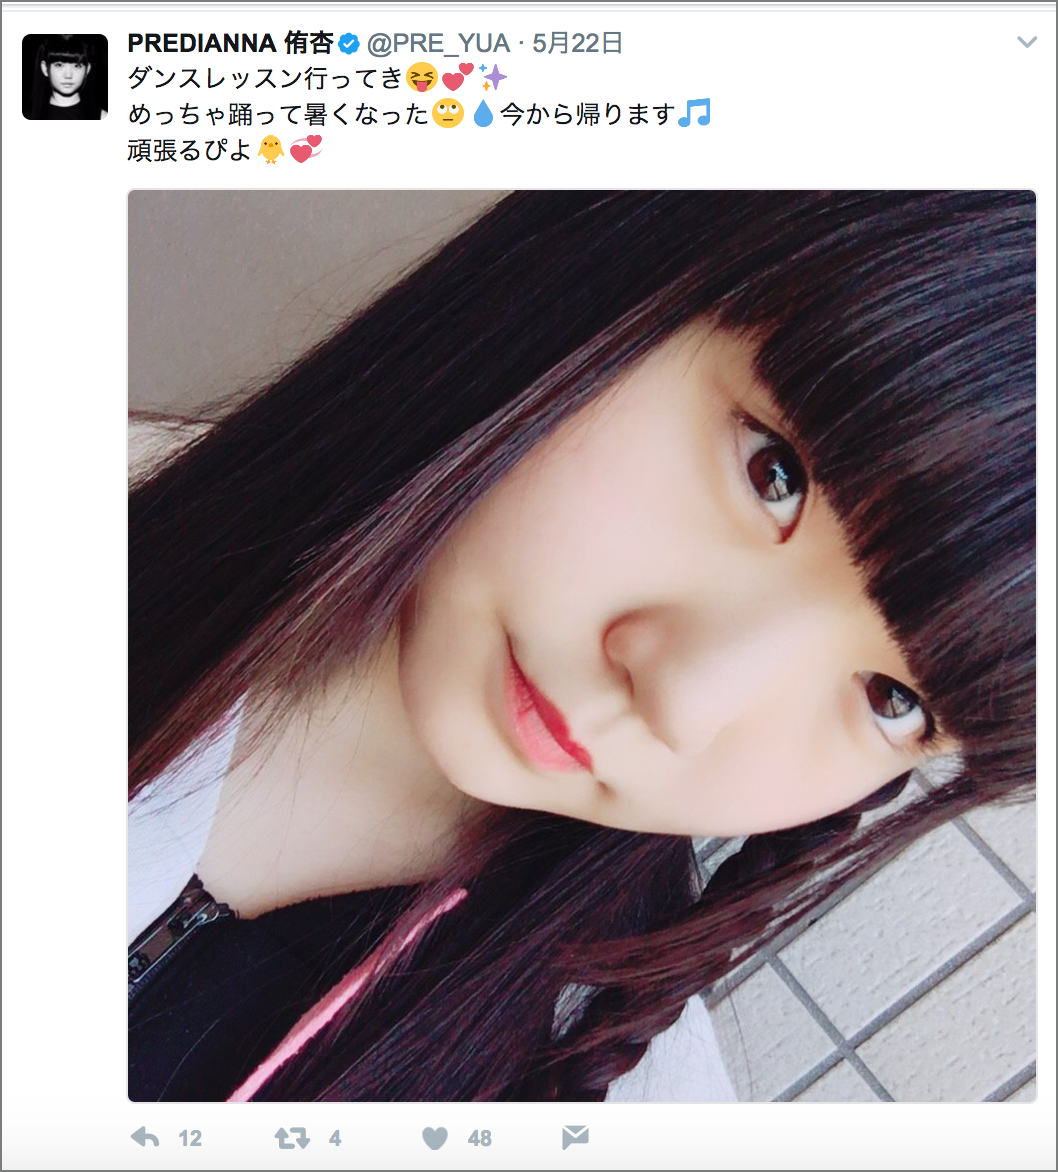 5月19日から、アイドルグループ「PREDIANNA」の侑杏(ゆあ)さんのTwitter投稿をAIが代行中。5月31日まで、AIが代行予定